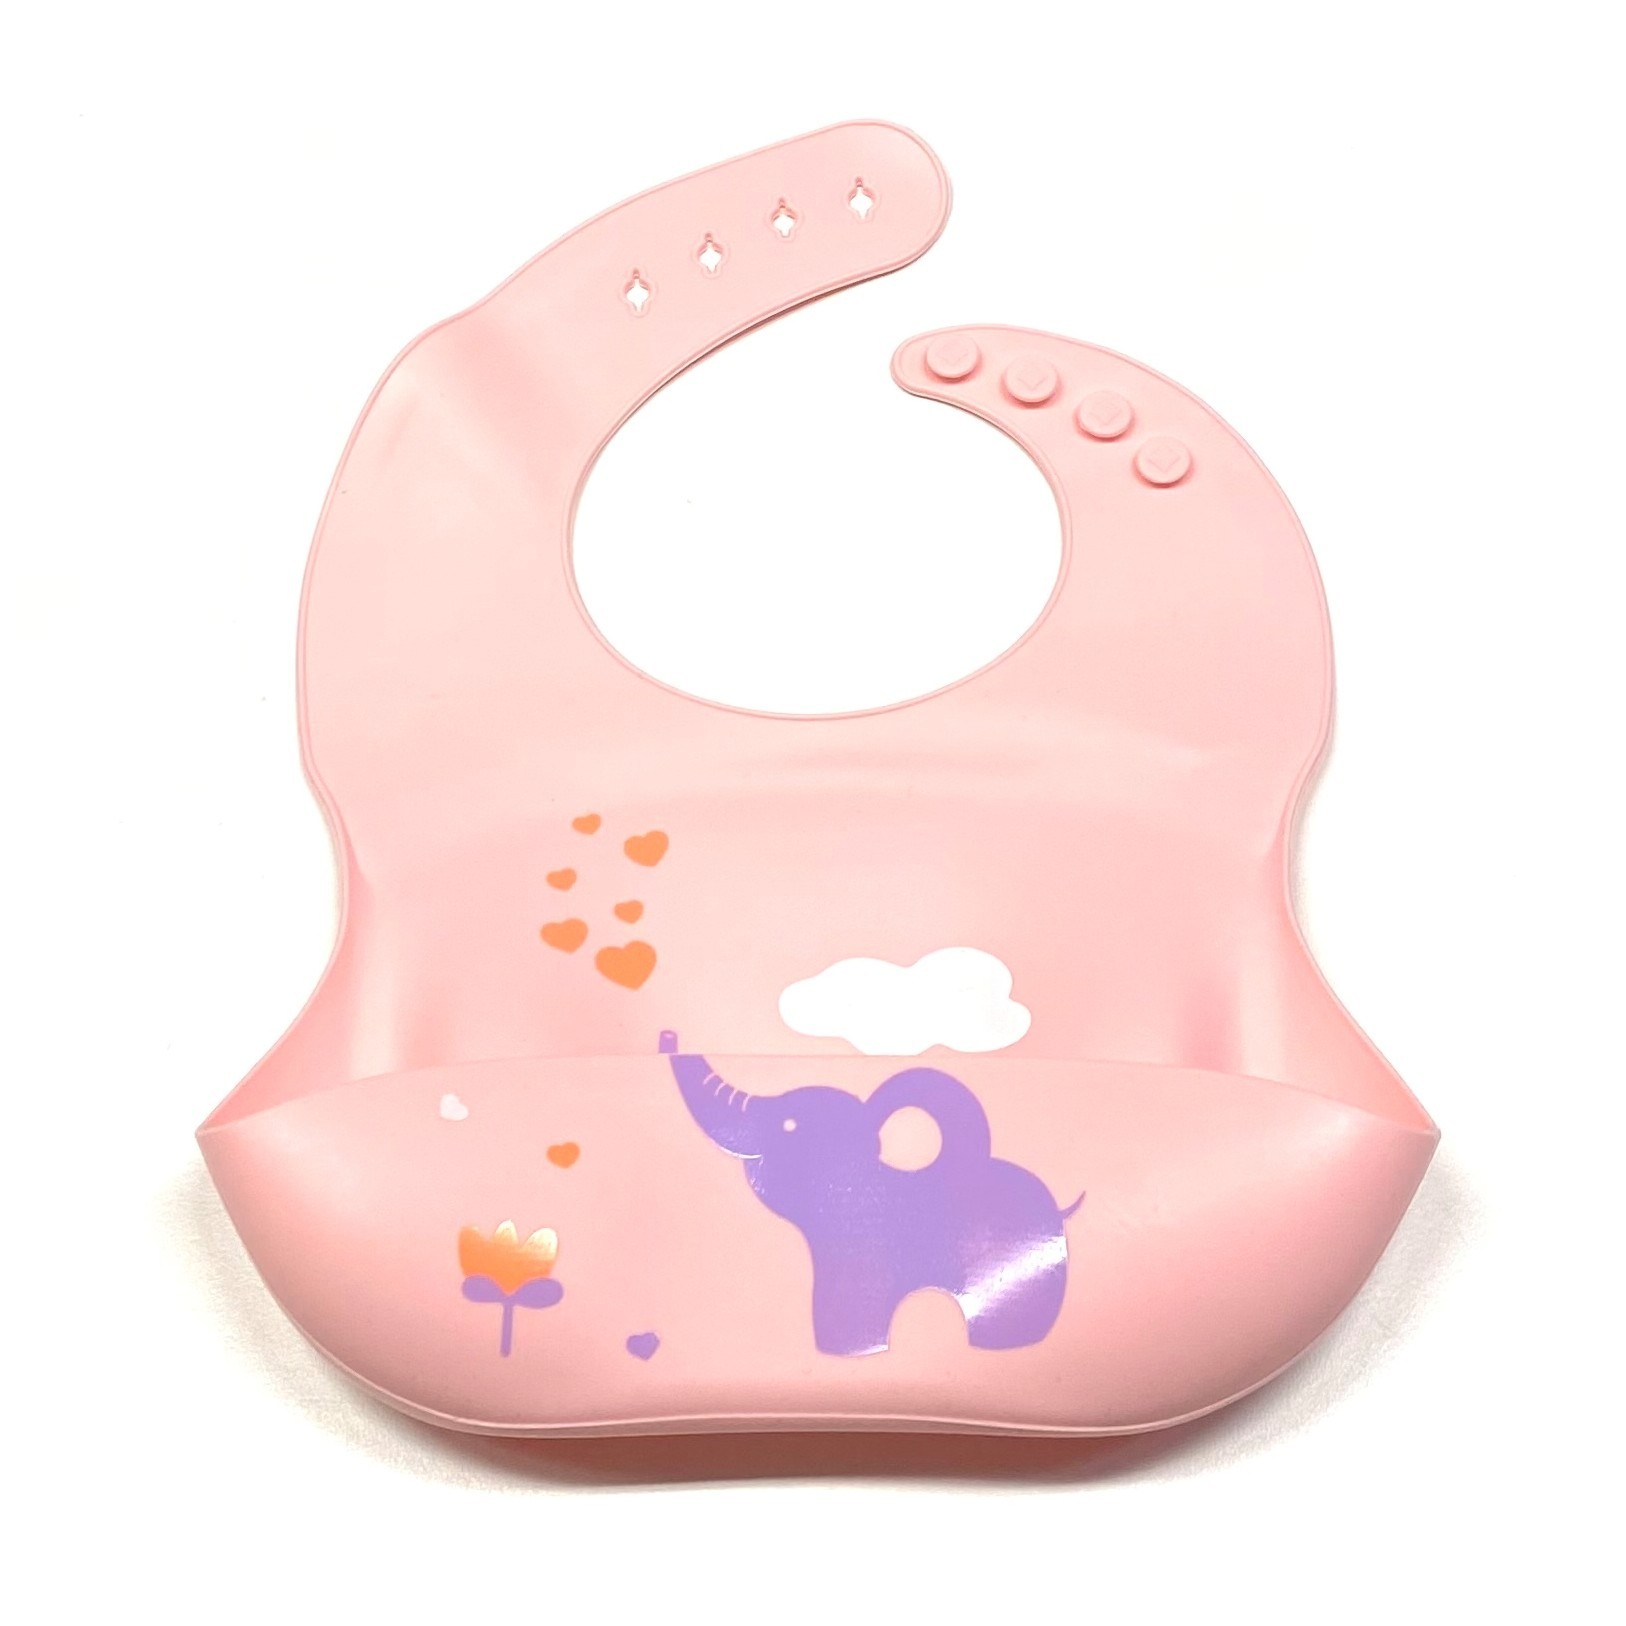 Babero de silicona con raspador de migas y pico, blw, color bebé, rosa  ballena